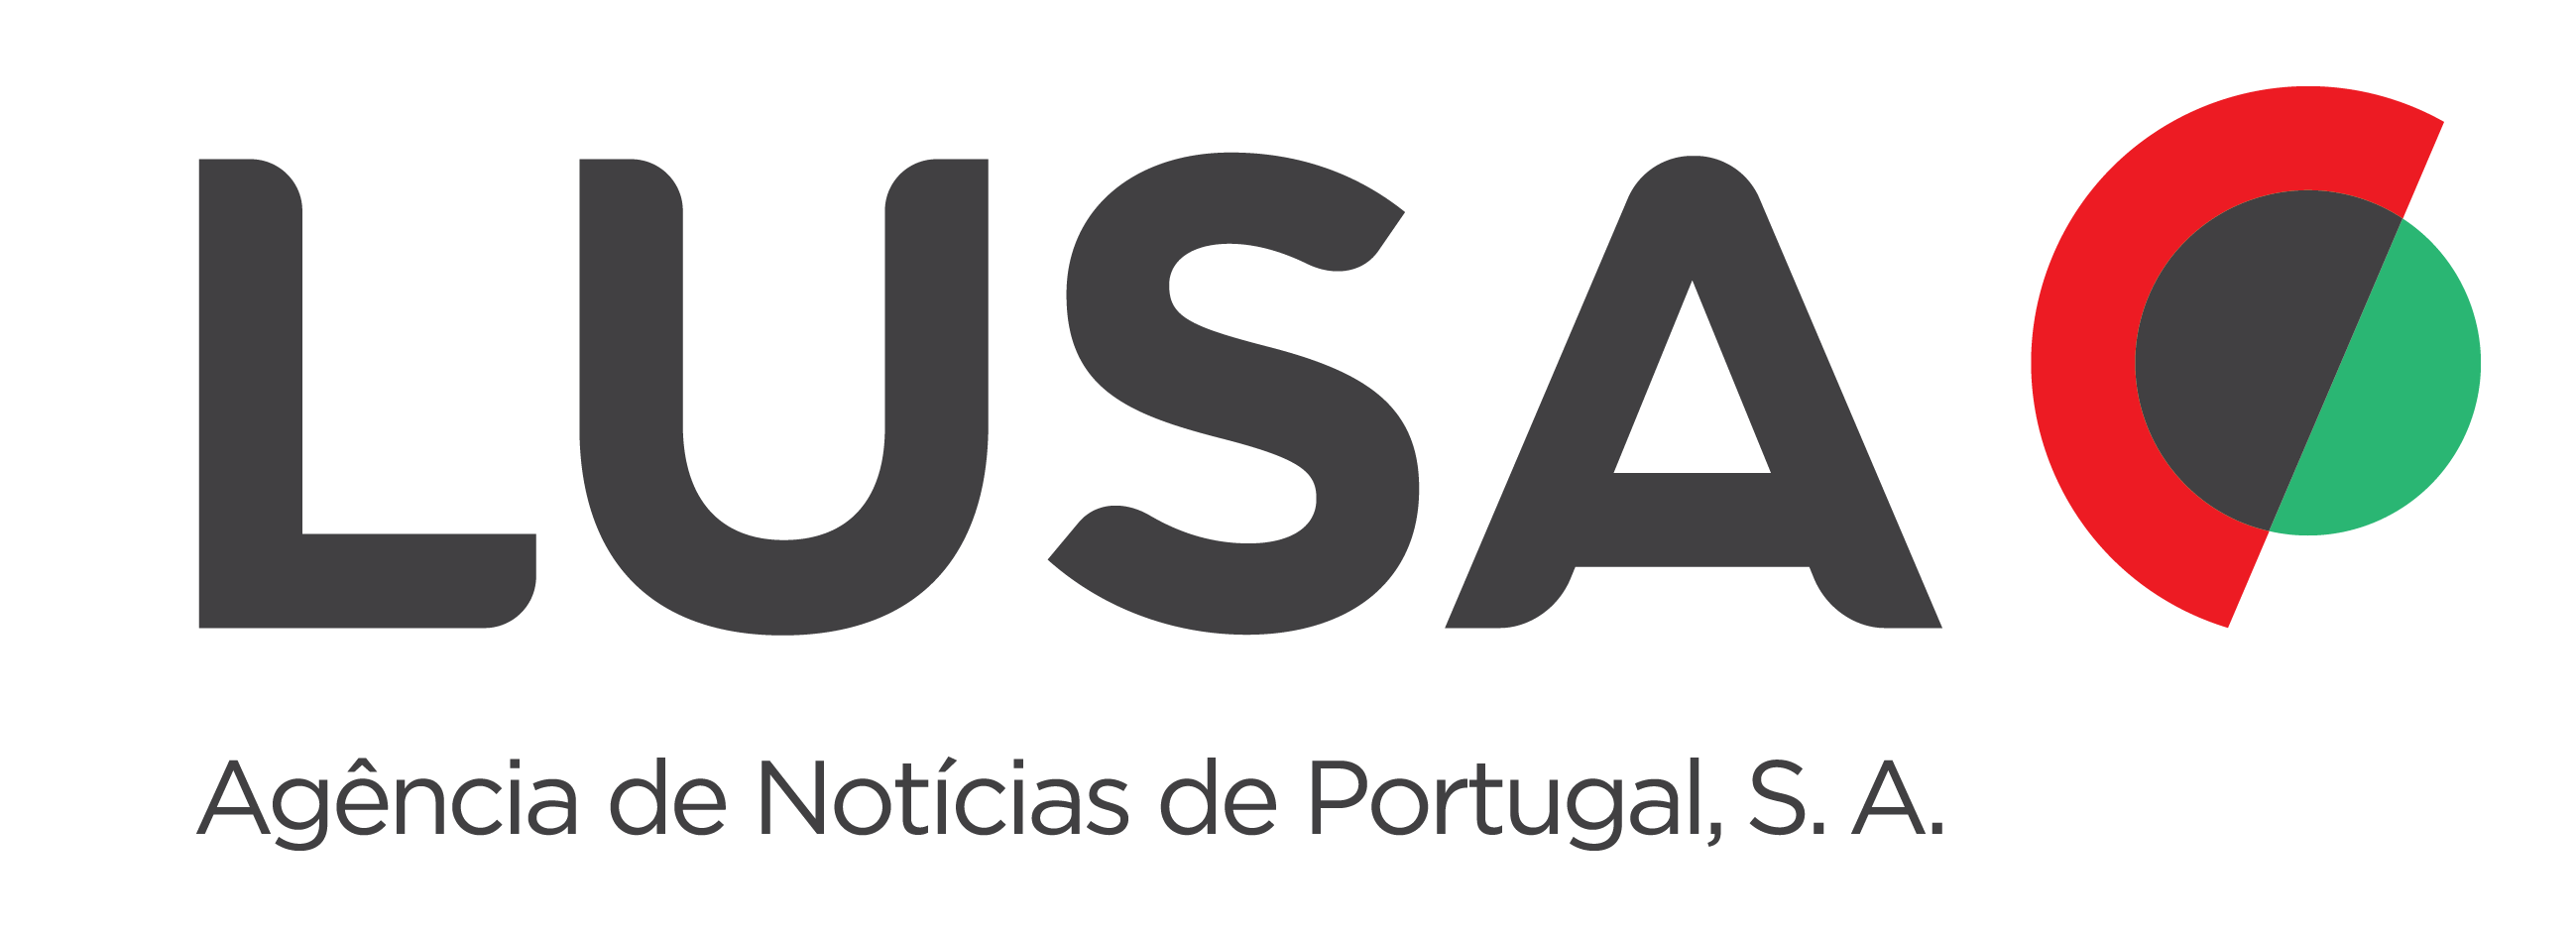 葡萄牙卢萨社-logo.png